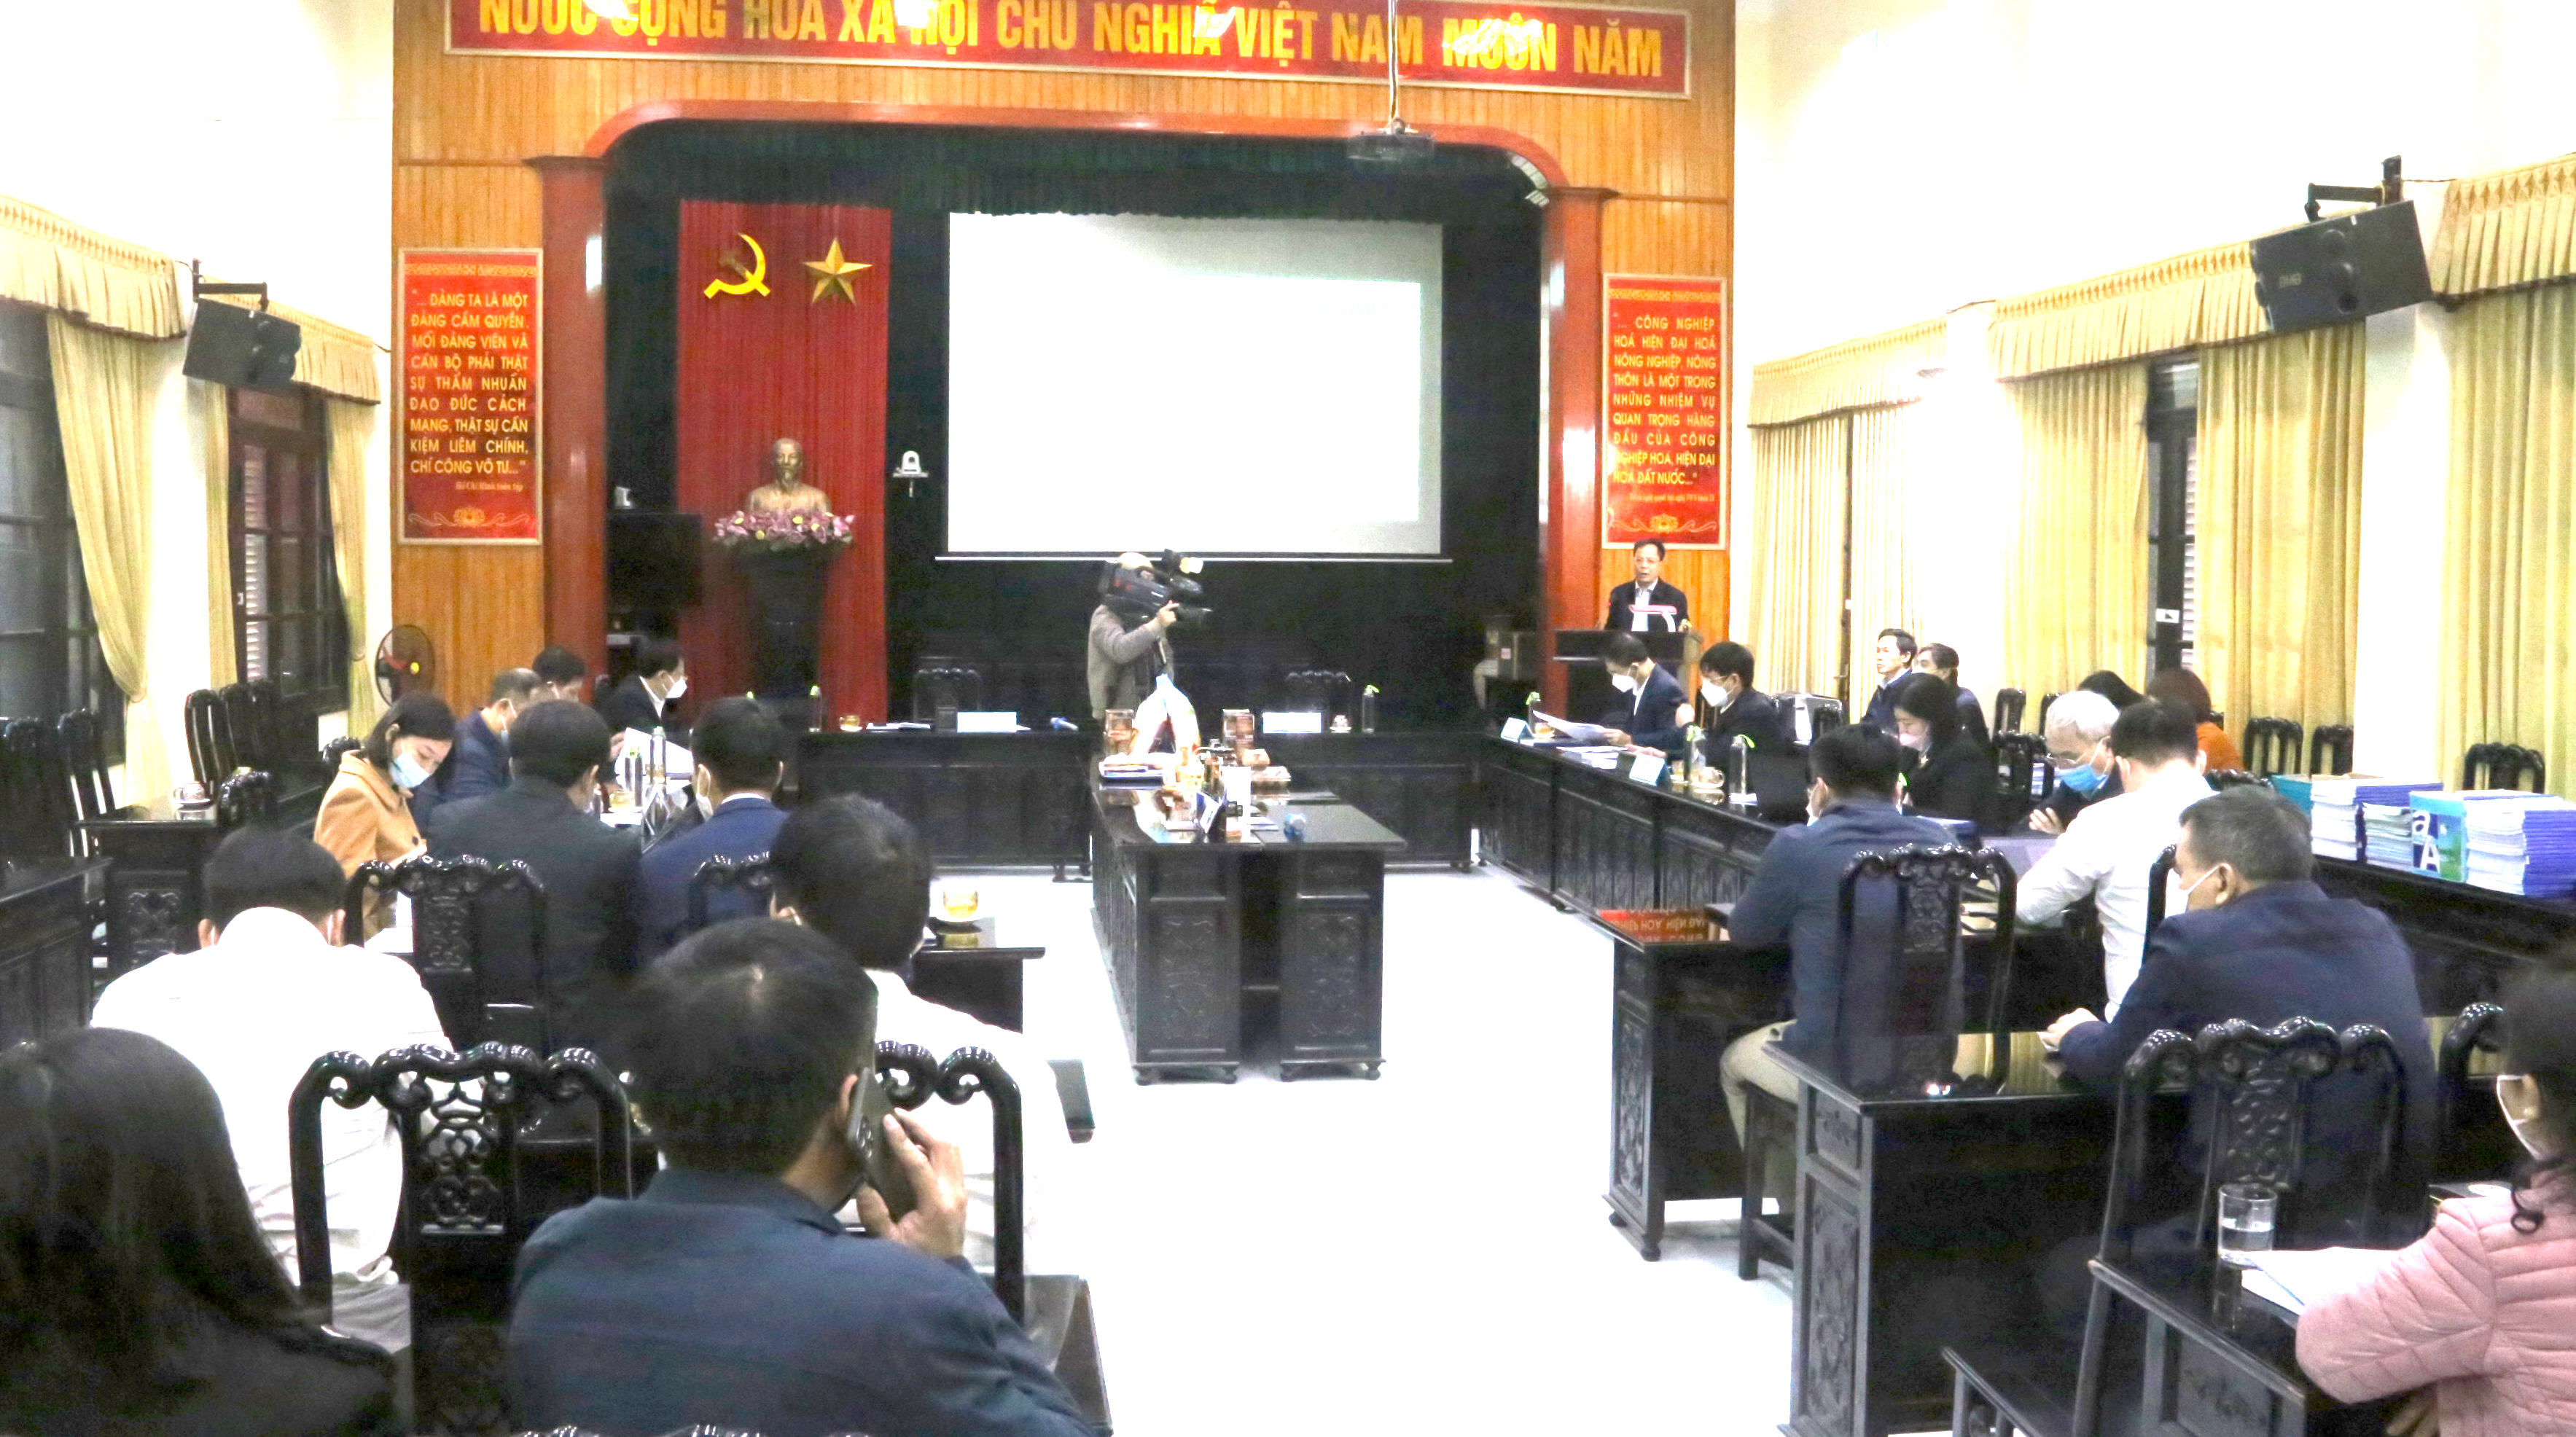 Toàn cảnh hội nghị đánh giá, phân hạng sản phẩm Ocop cấp tỉnh Nam Định năm 2021 Ảnh: Thanh Bình